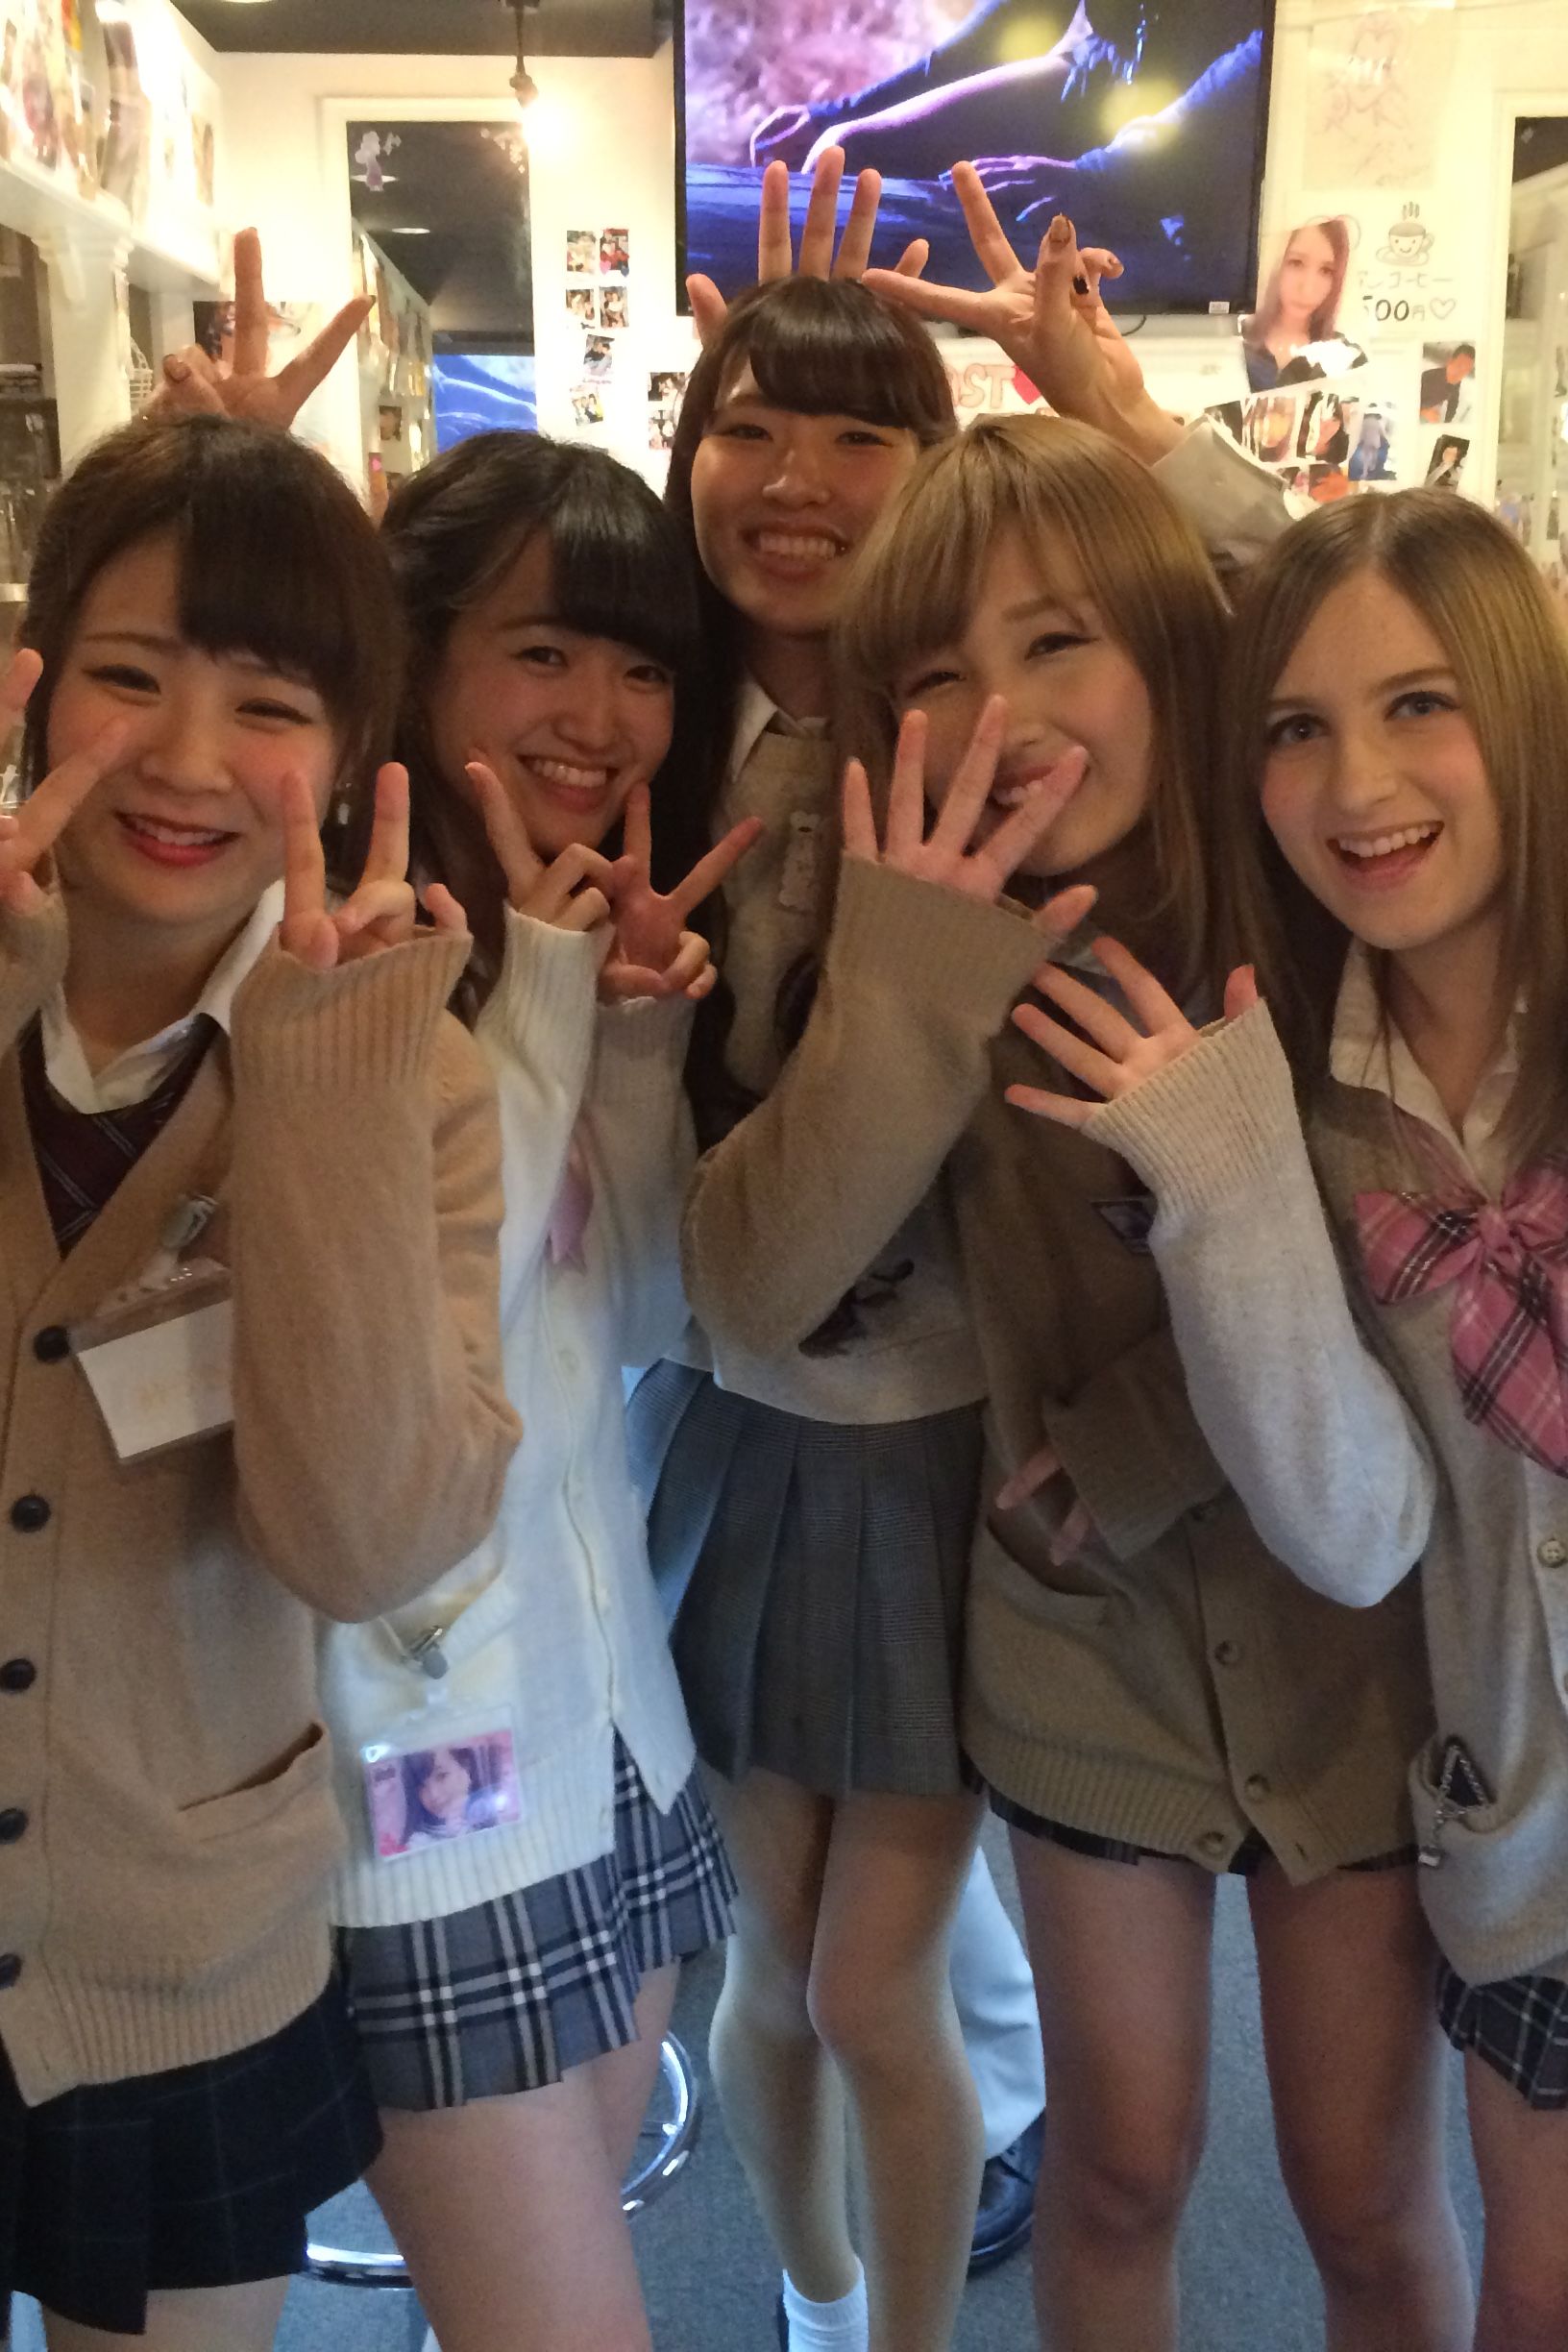 Australia School Girls Porn Hd 16 Yers - Japan school girl culture: The dark truth | CNN